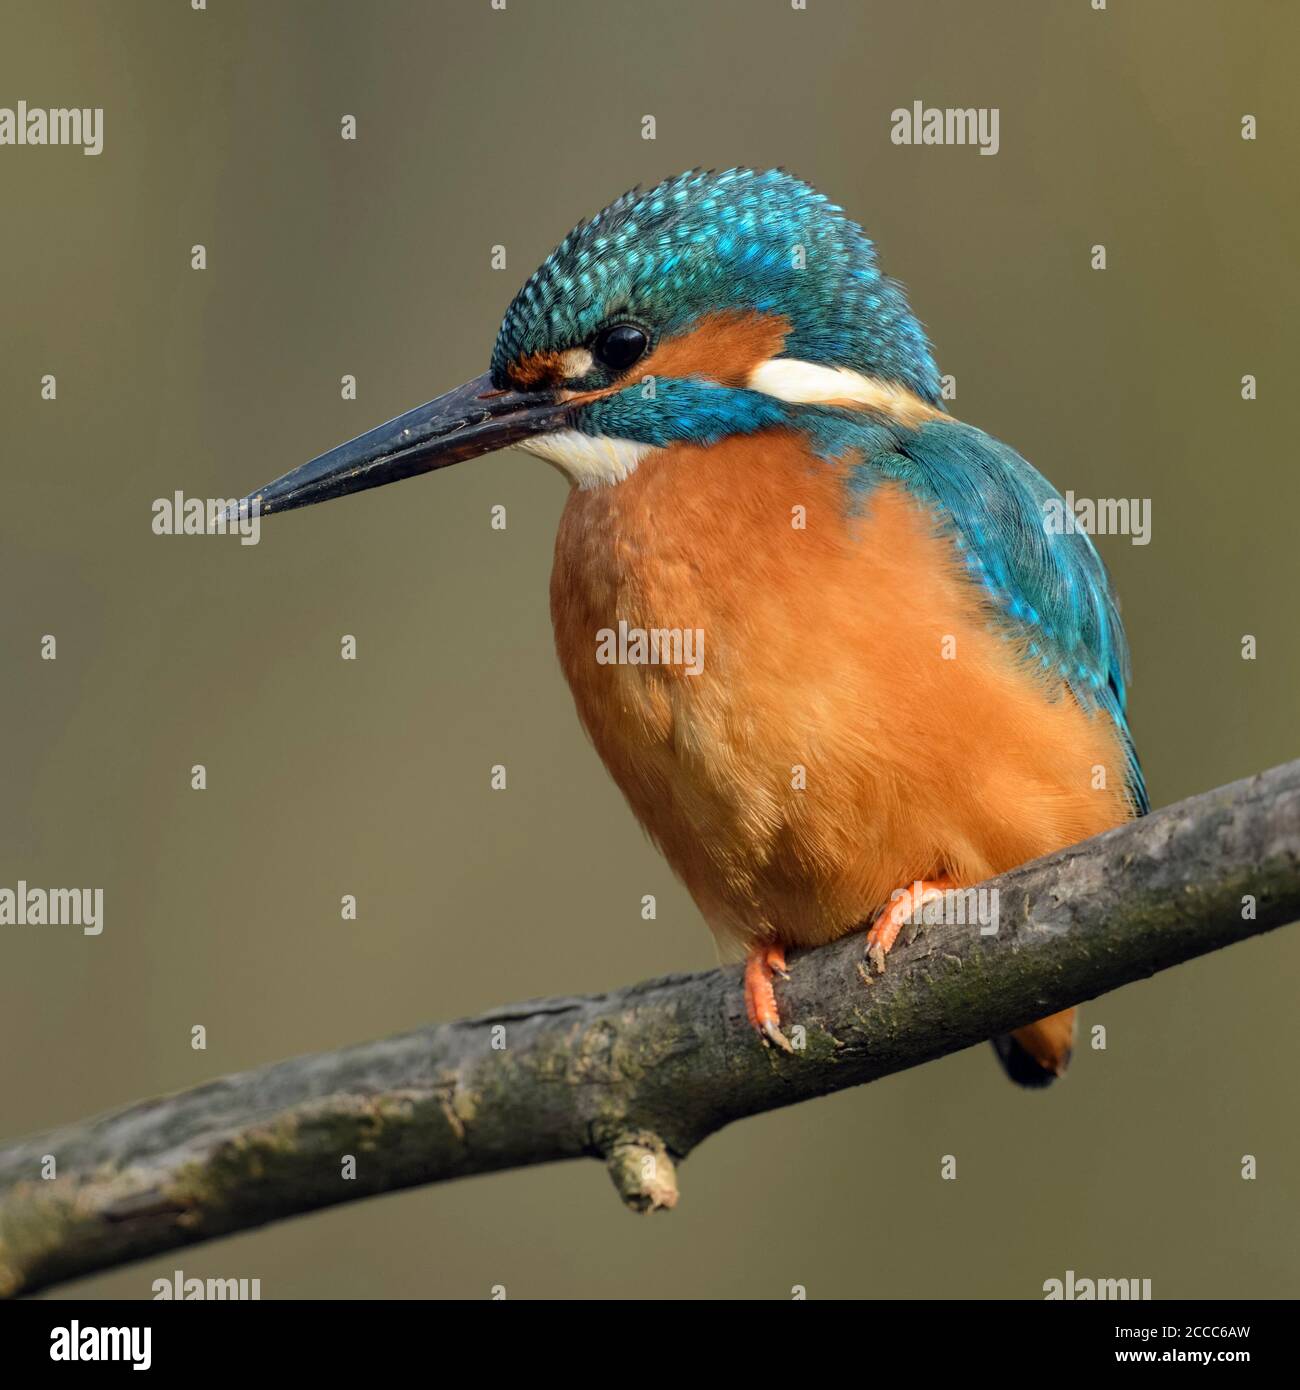 Kingfisher commun / Optimize ( Alcedo atthis ), homme oiseau avec la saleté / boue / masse sur son bec après avoir creusé son terrier de nidification, de la faune, de l'Europe. Banque D'Images